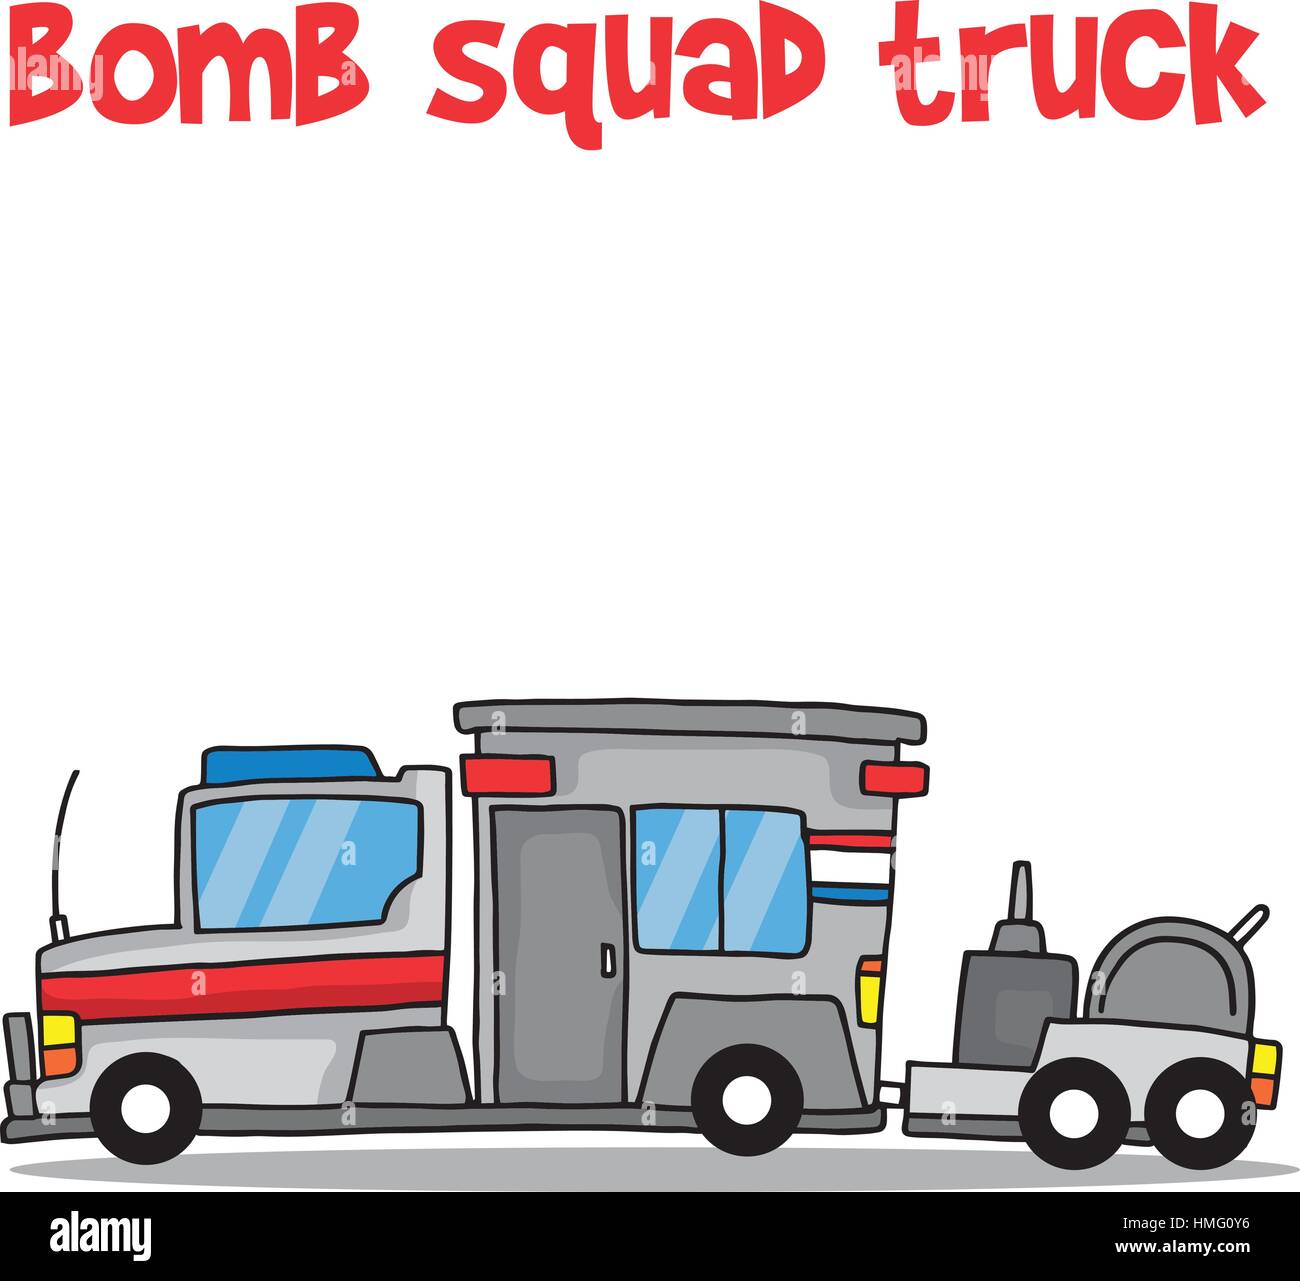 Bomb squad truck cartoon vector art Stock Vector